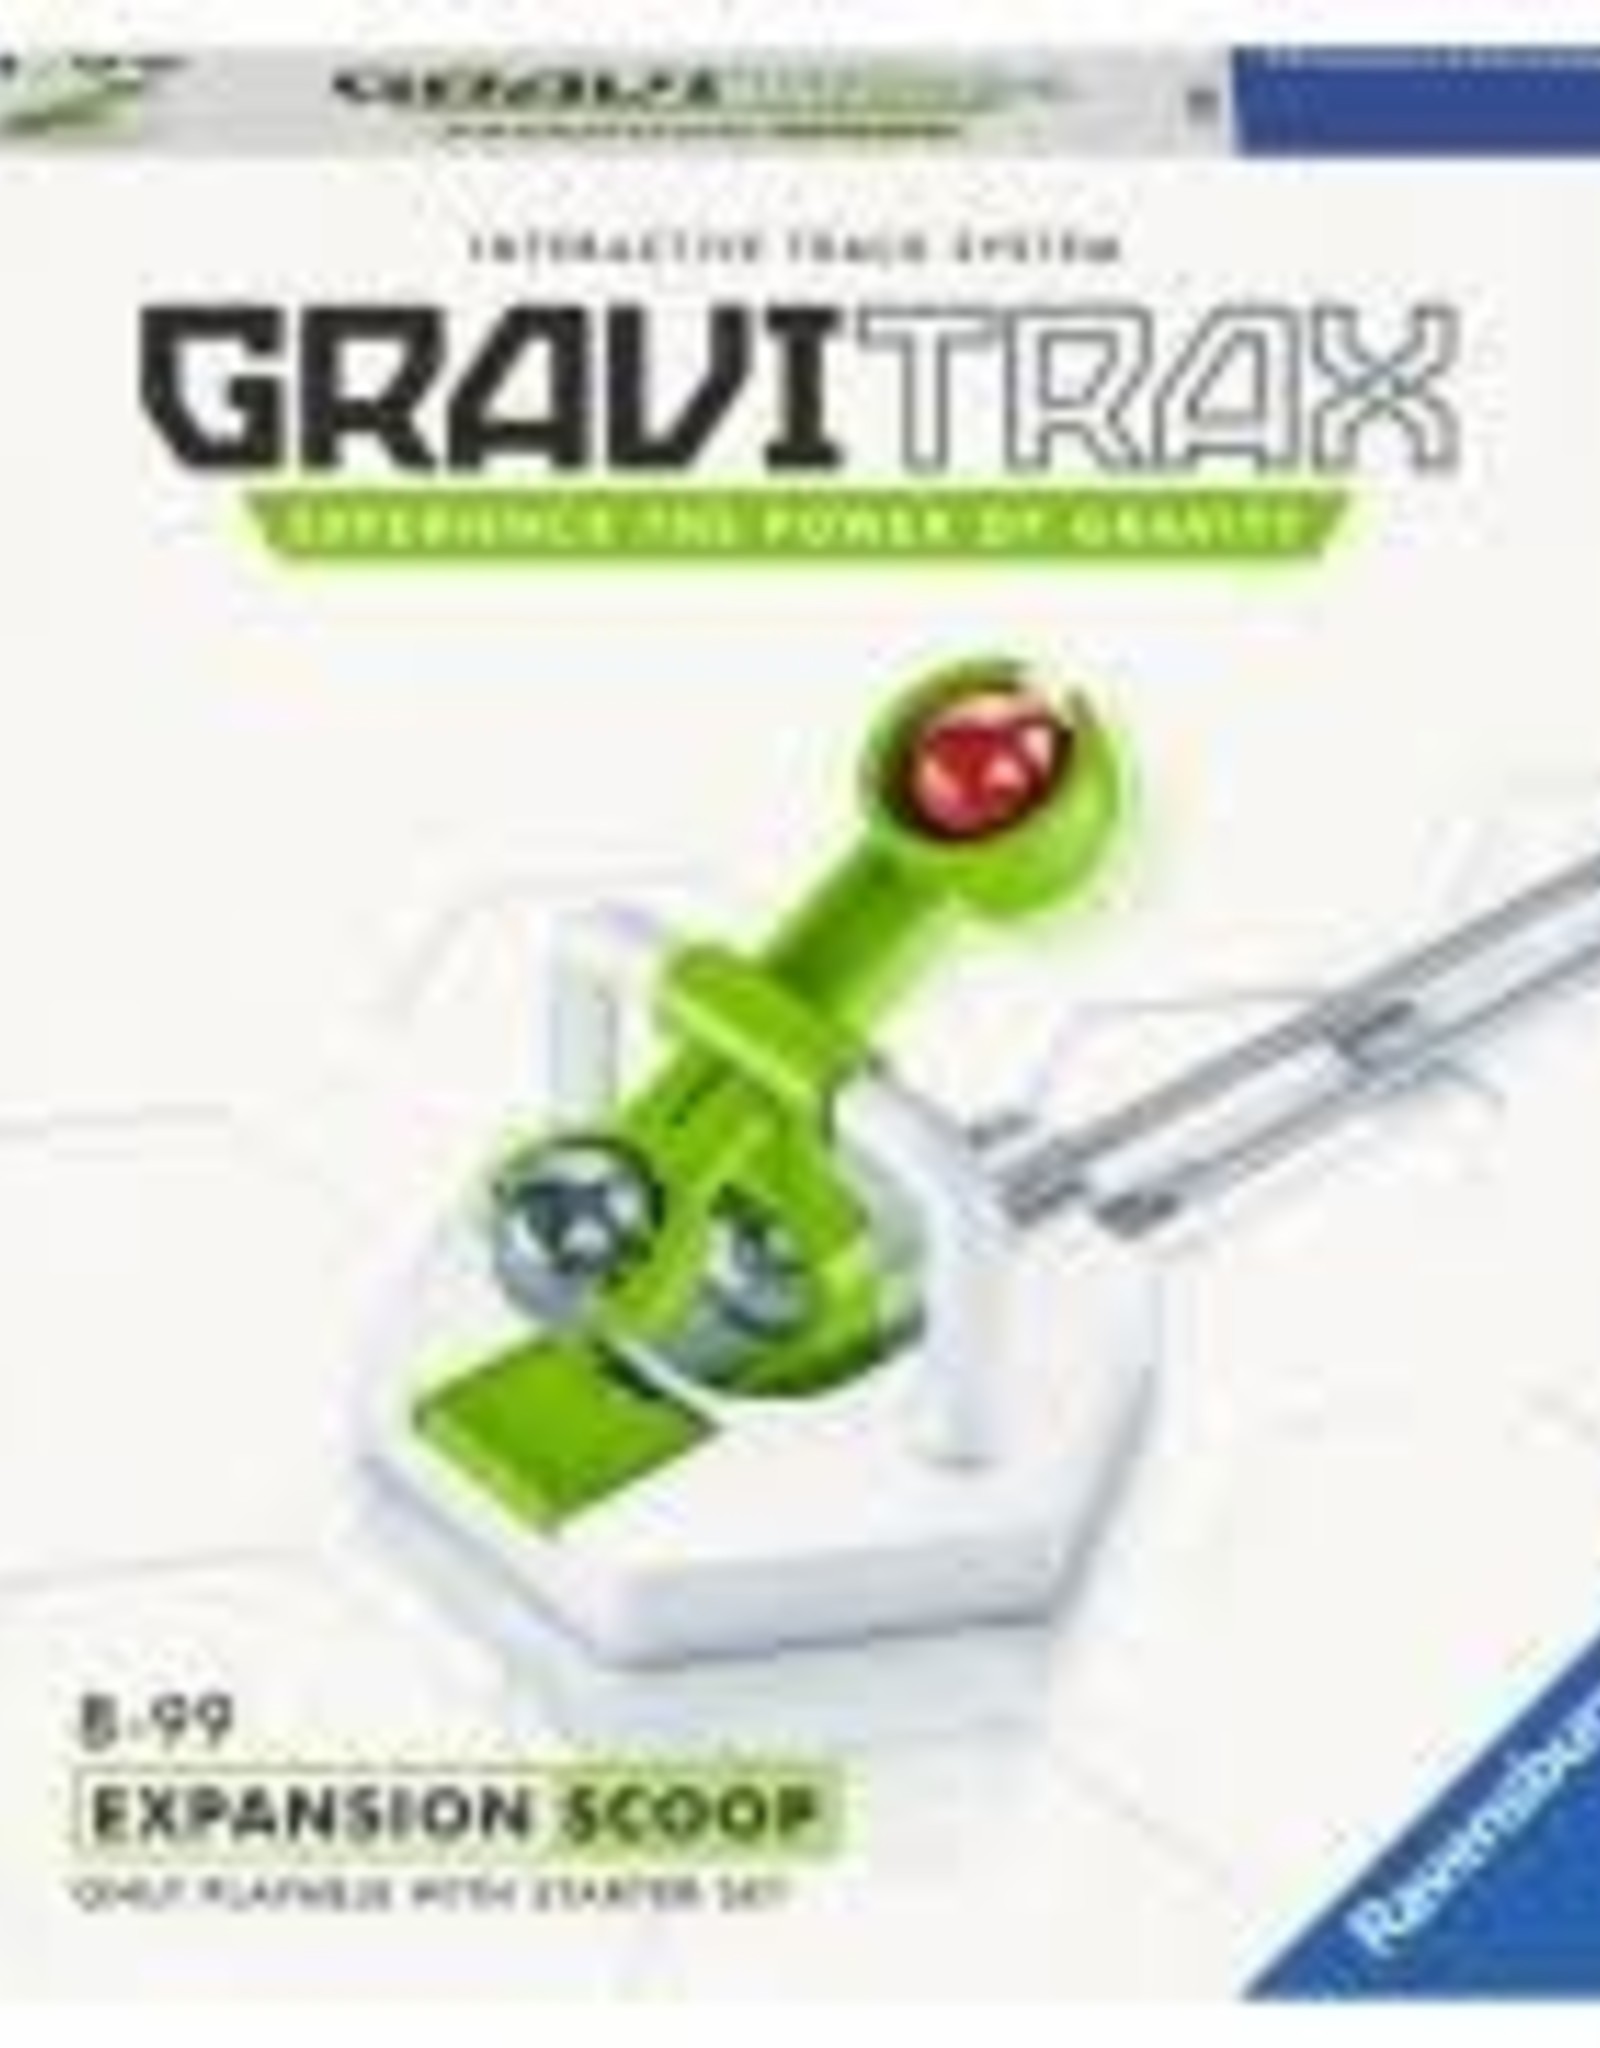 Gravitrax Gravitrax Accsessory- Scoop